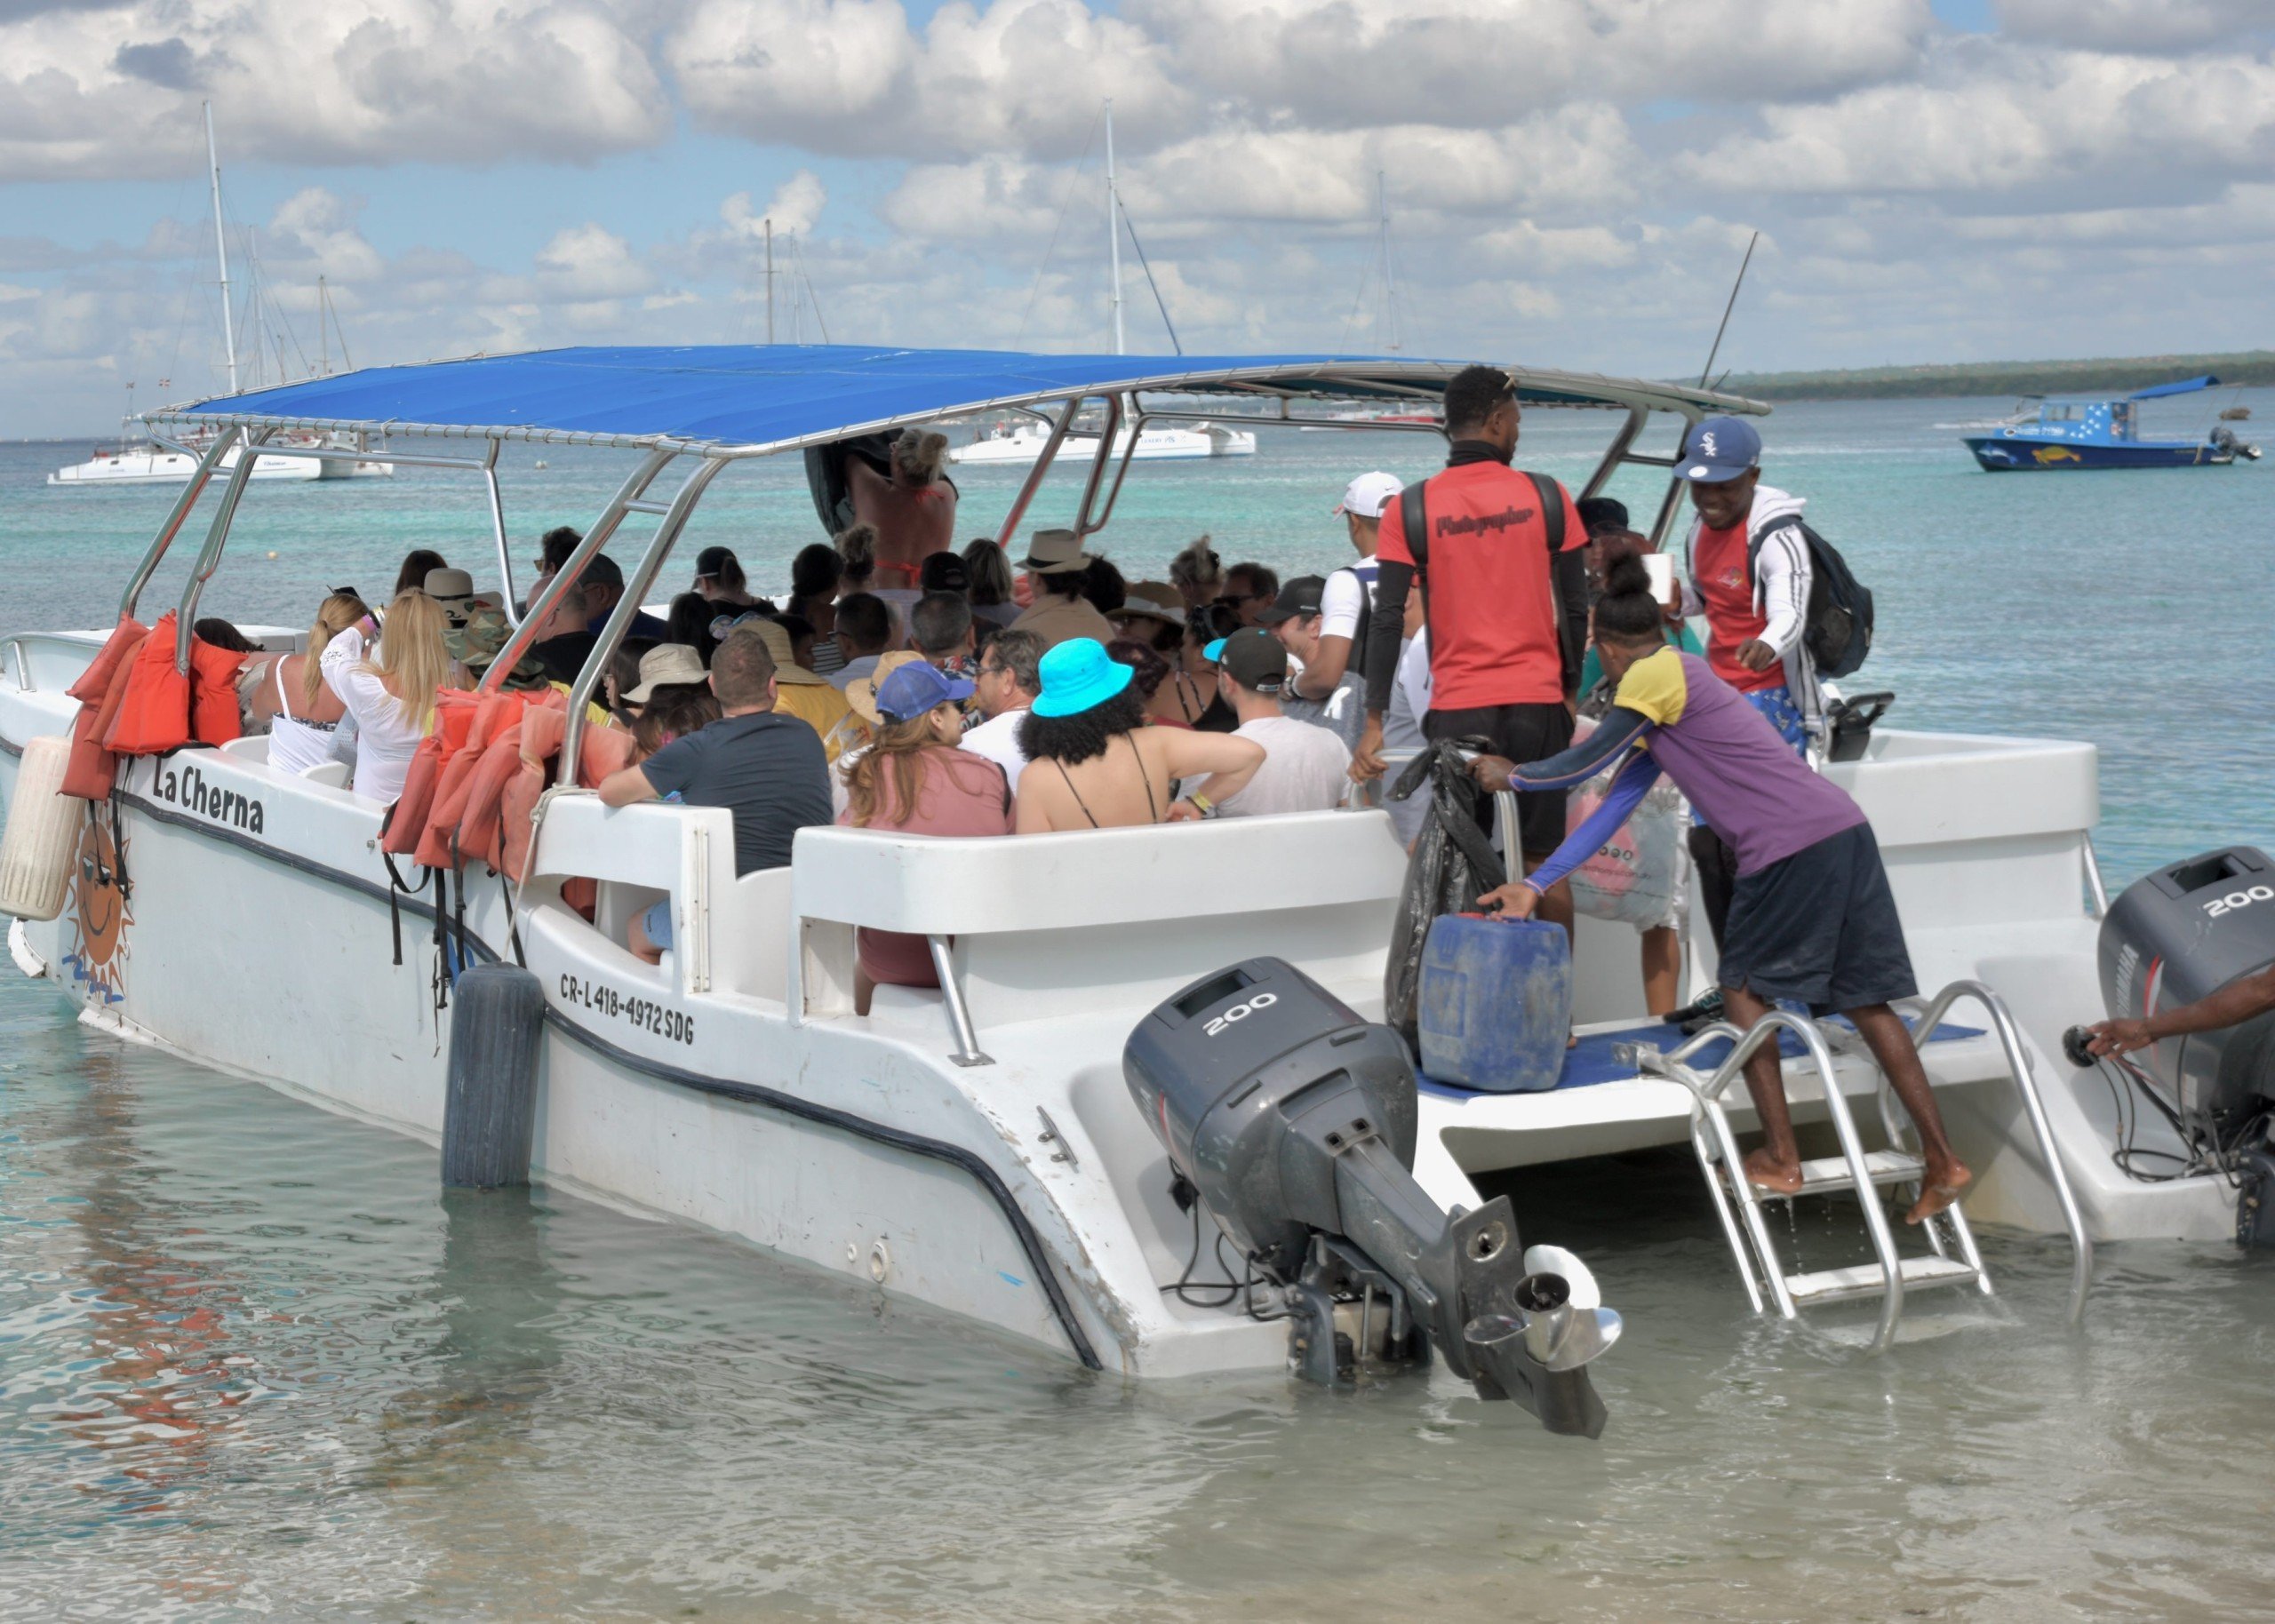 Boat trip to Saona Island